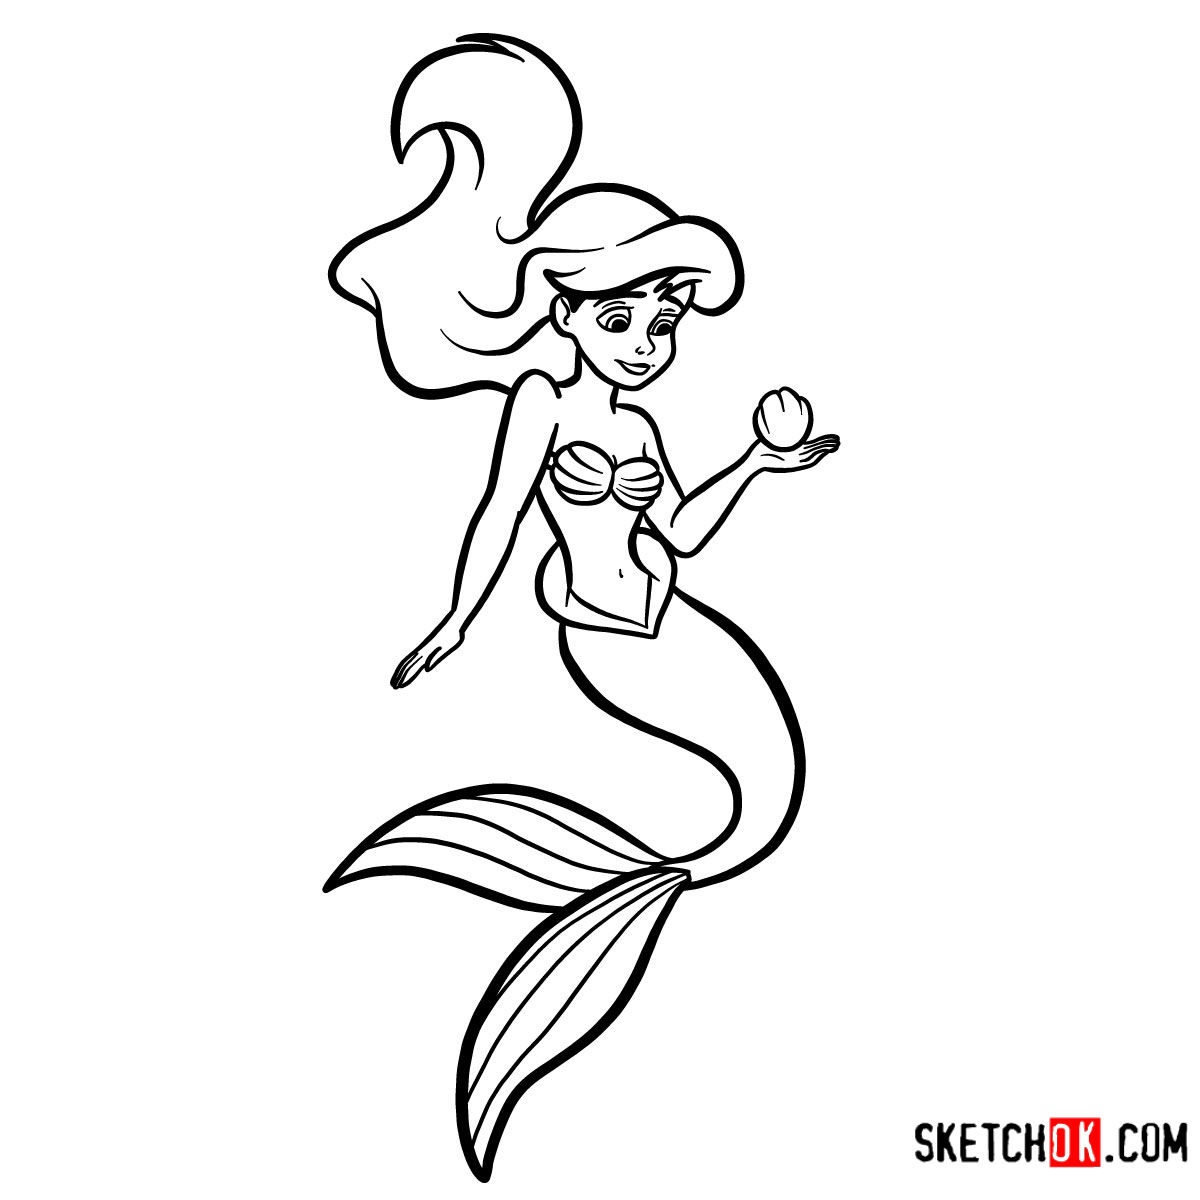 Ariel  Sketch by SabakuNoTemari88 on deviantART  Disney character sketches  Mermaid drawings Disney drawings sketches